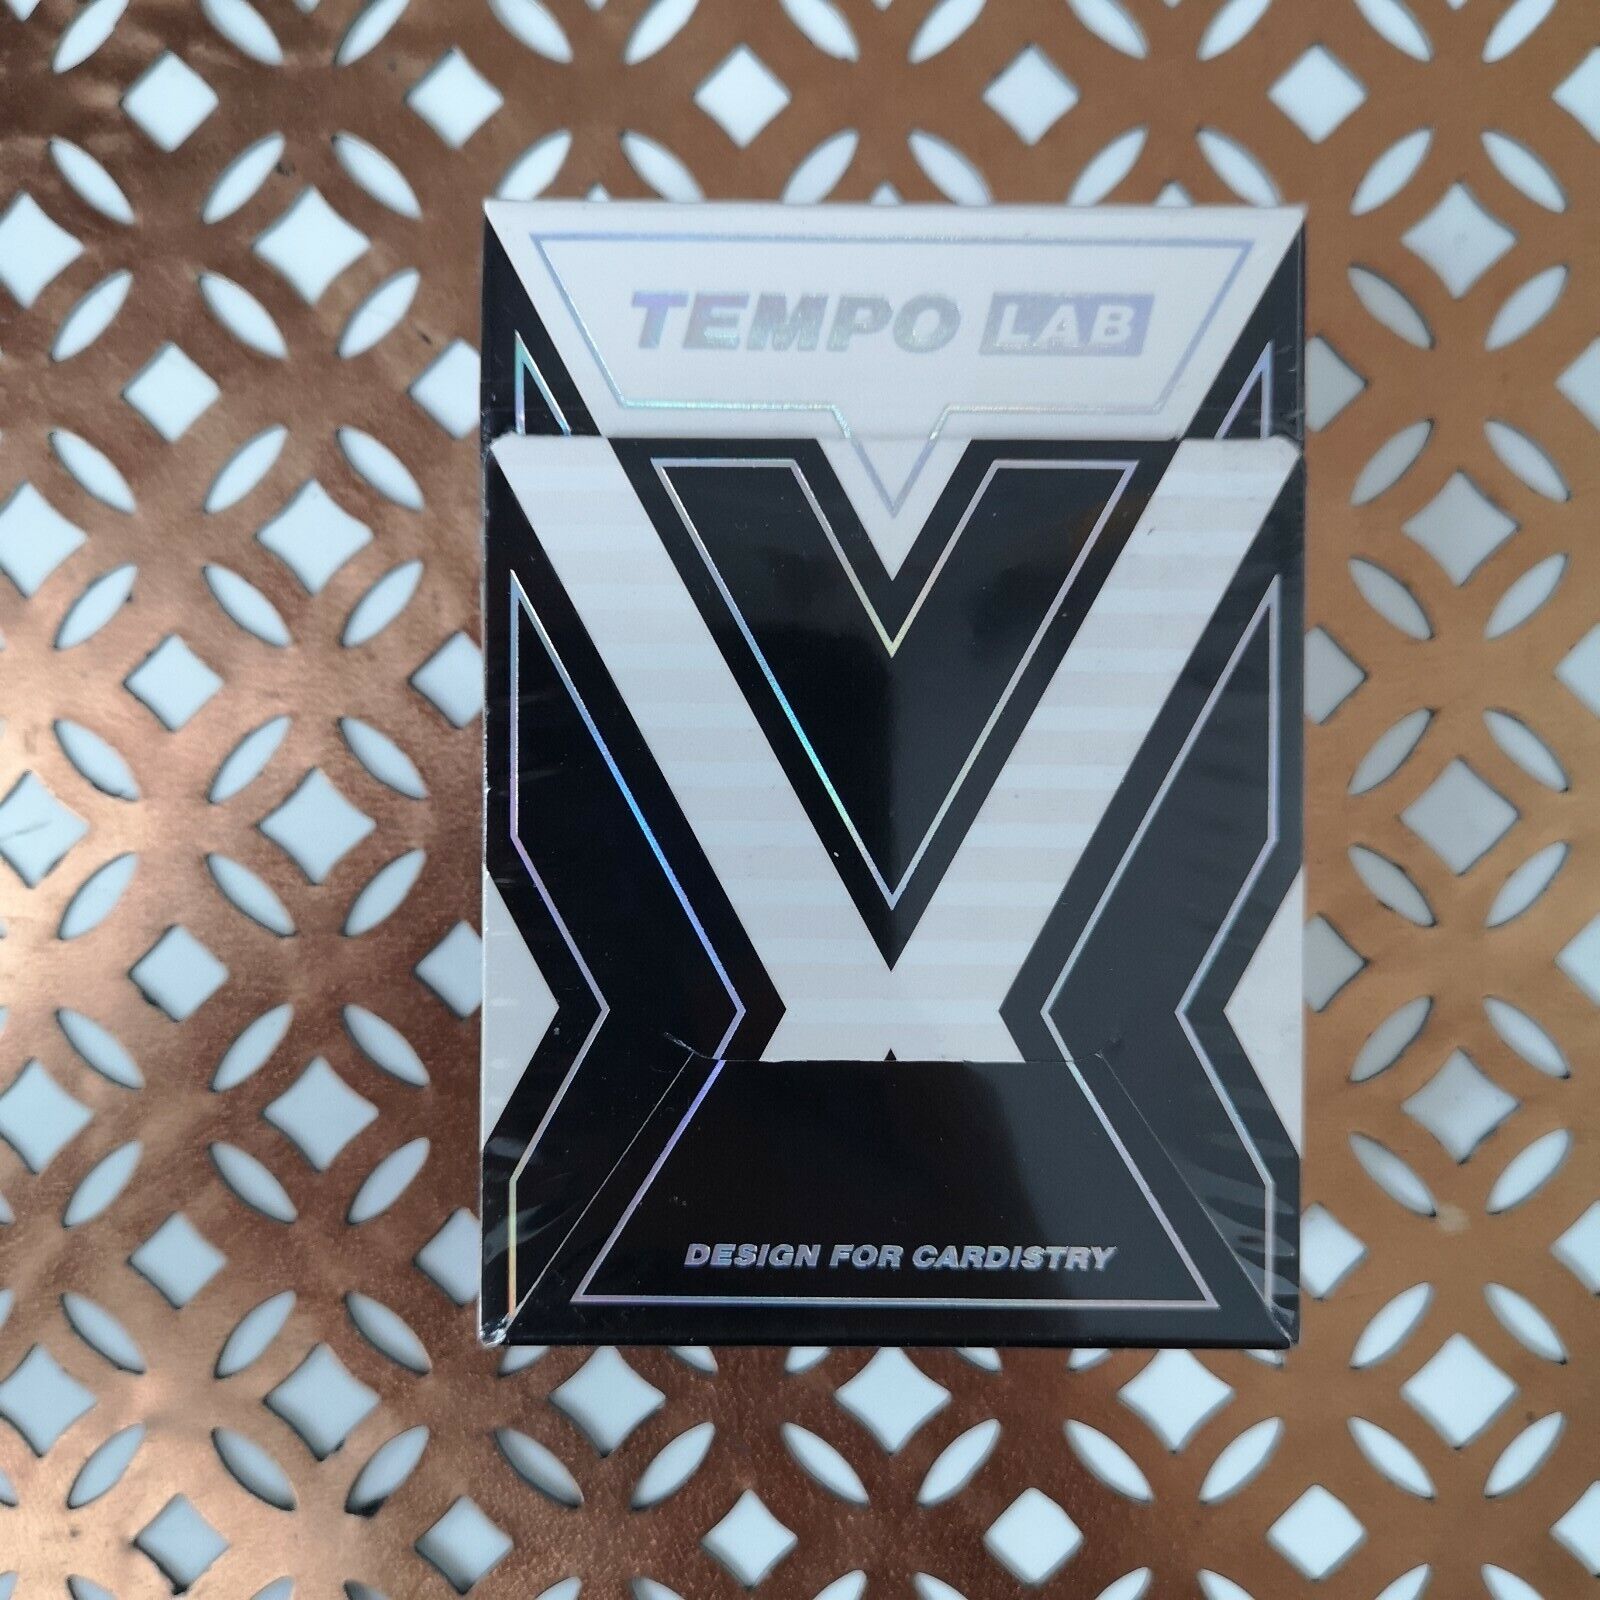 Details zu  Tempo Lab Ltd Unnummerriert Edition Arche Spielkarten Neu & Verpackt Selten Deck Billige Aktie